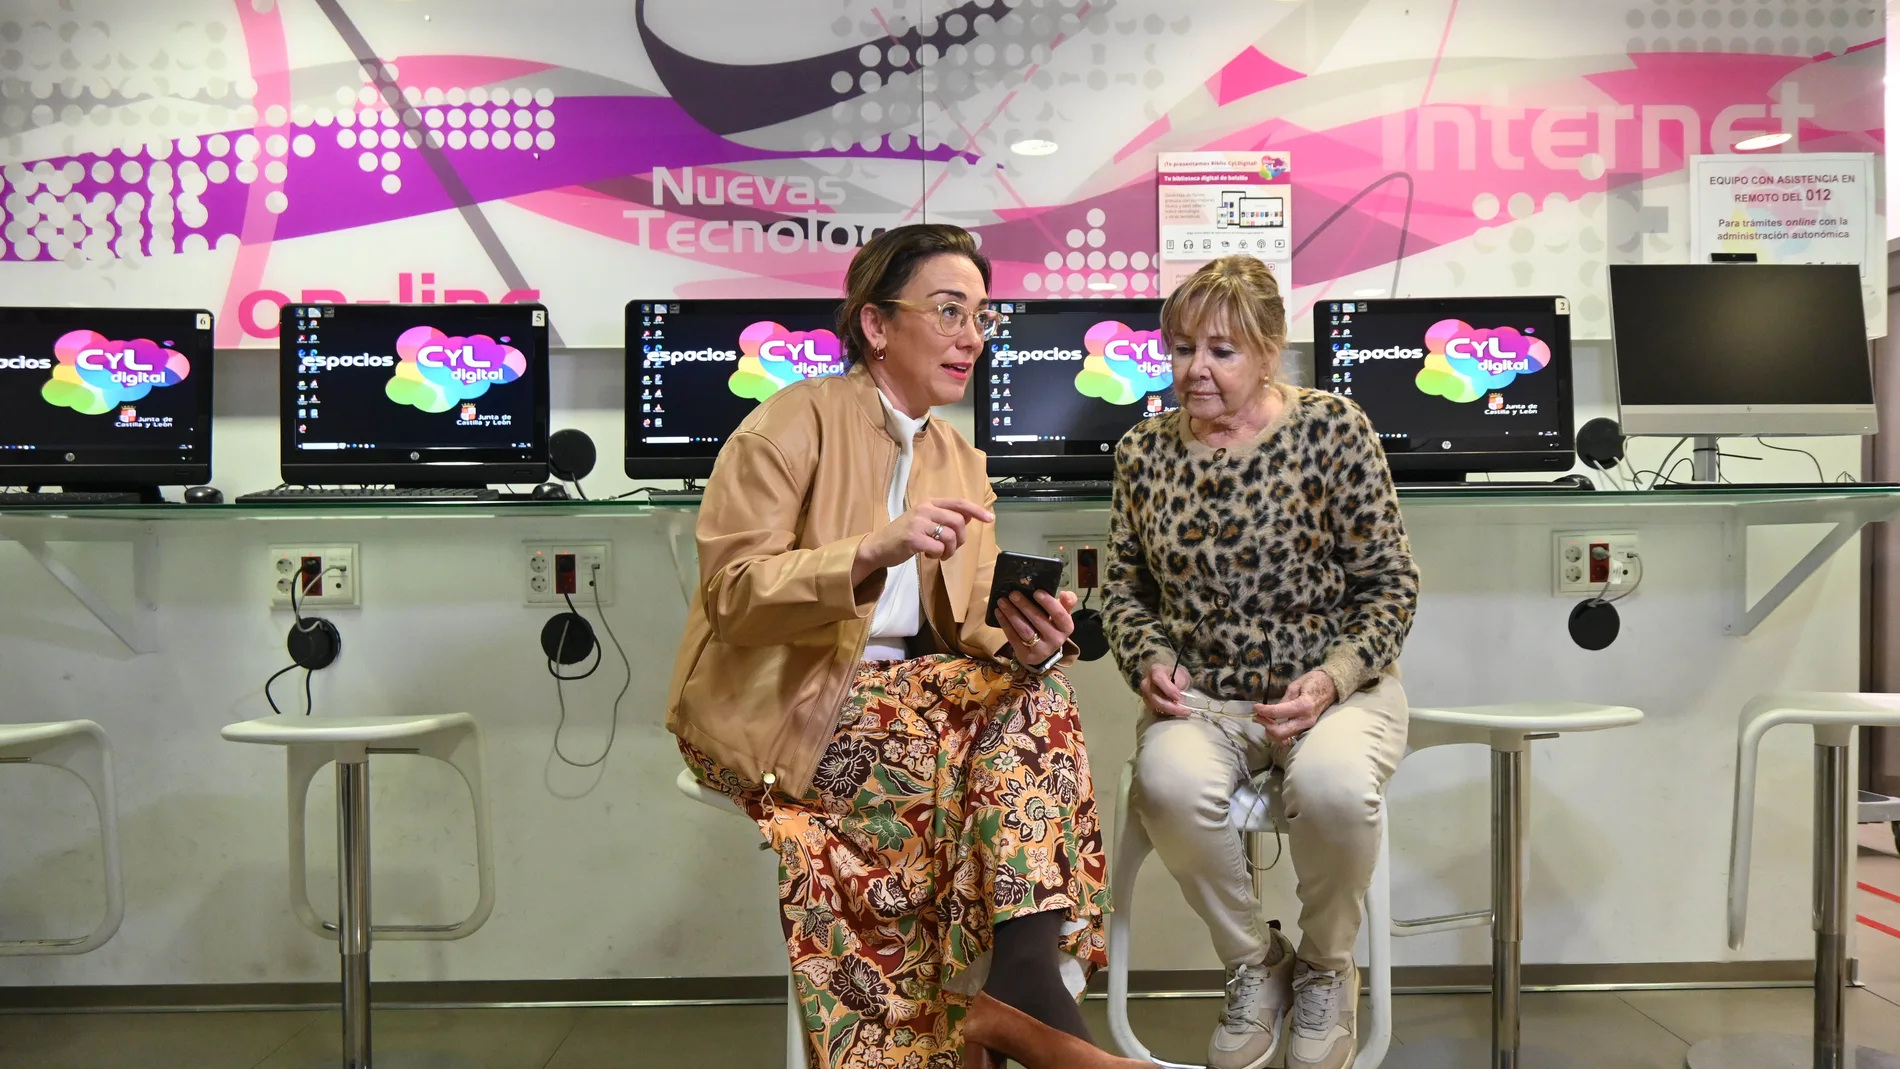 La consejera de Movilidad y Transformación Digital, María González Corral, ha visitado el Espacio CyL Digital de Valladolid para dar a conocer el nuevo servicio remoto de asesoramiento tecnológico